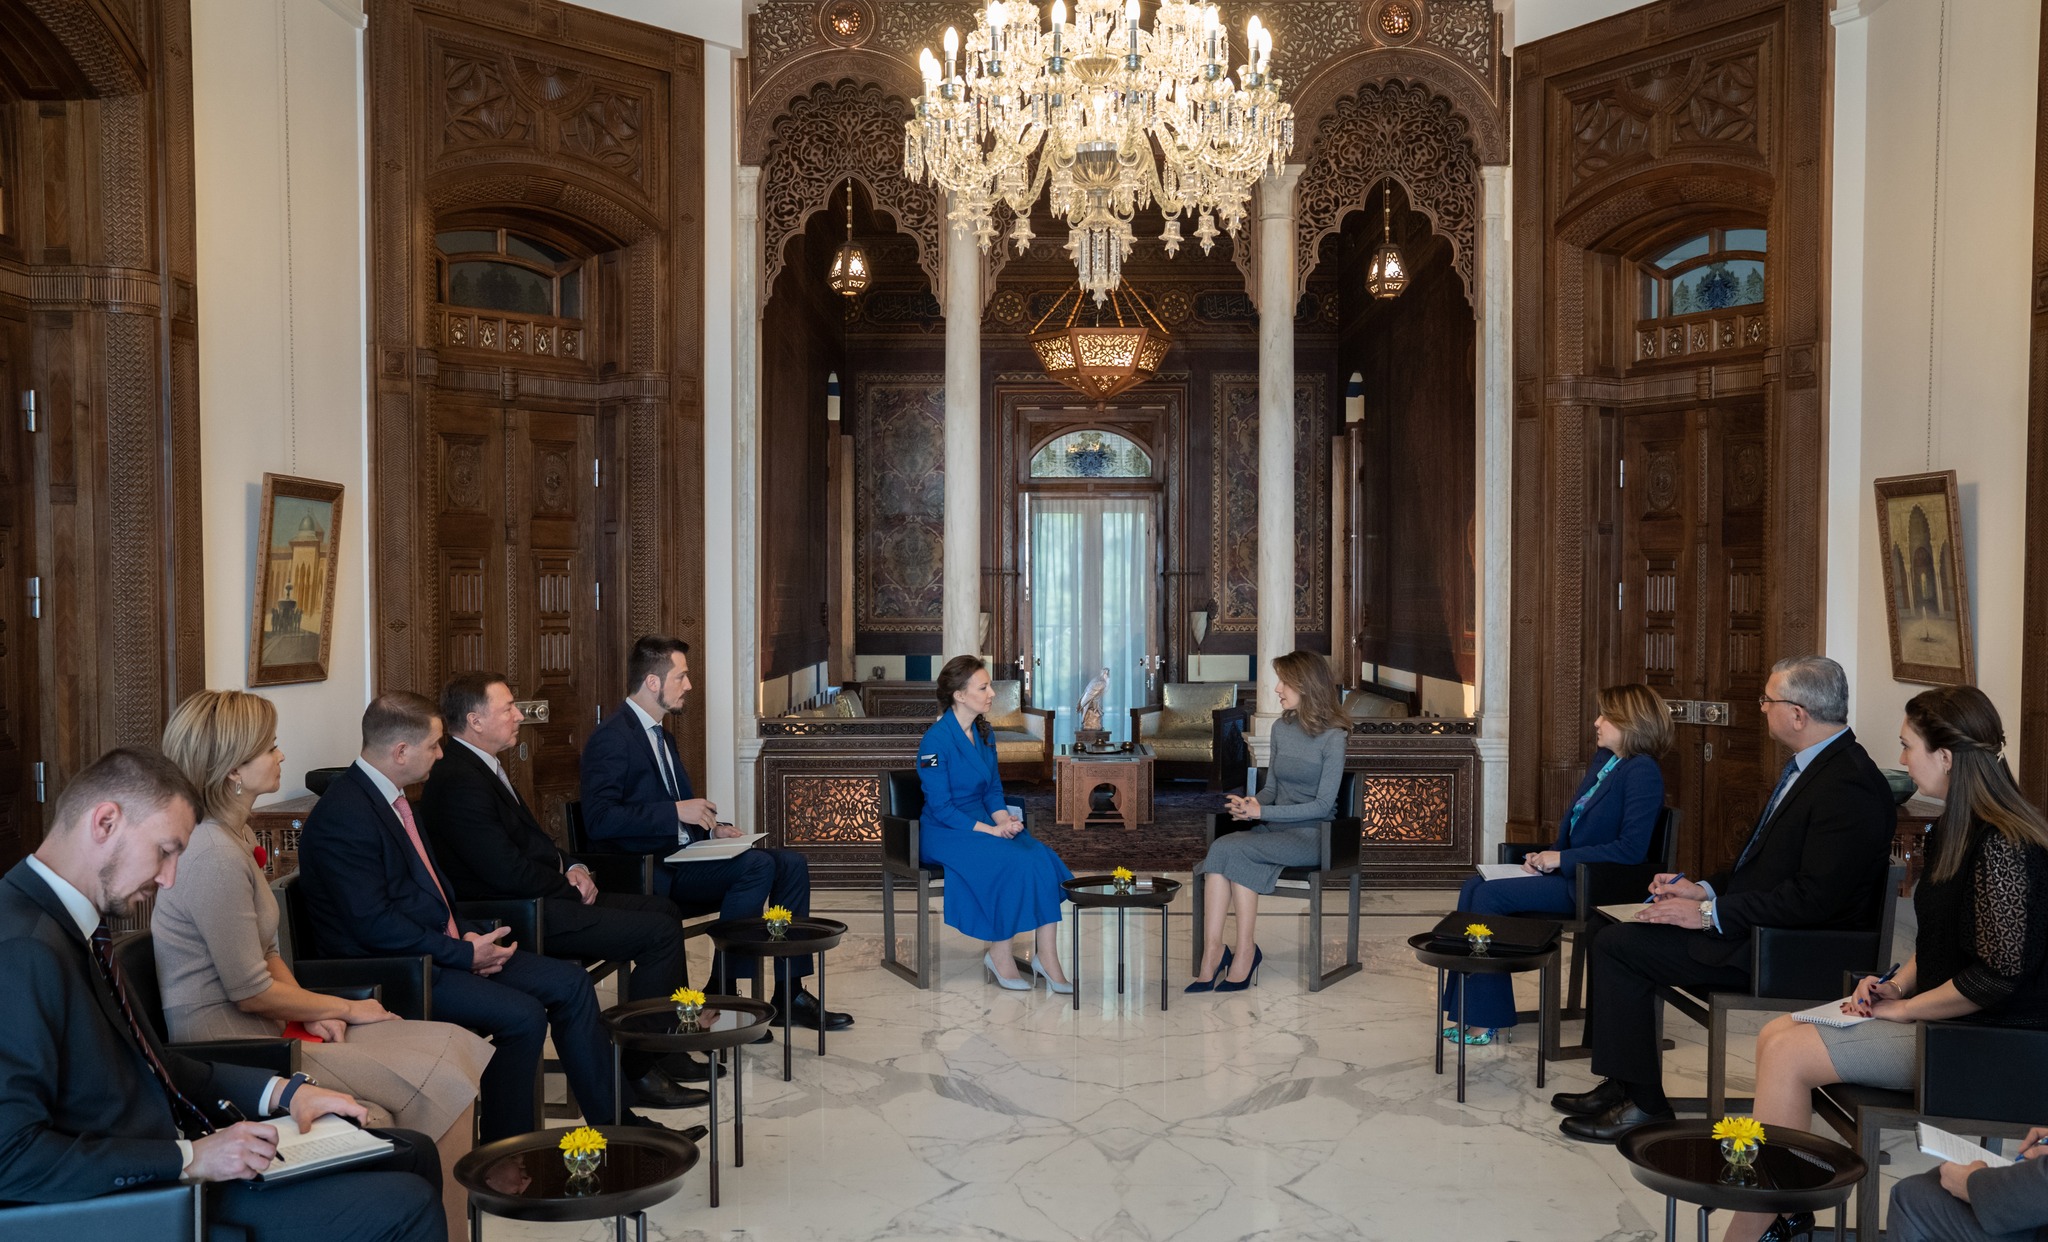 السيدة أسماء الأسد تستقبل كوزنيتسوفا واللقاء يتناول الأوضاع الدولية المضطربة وتأثيرها على المجتمعين السوري والروسي
